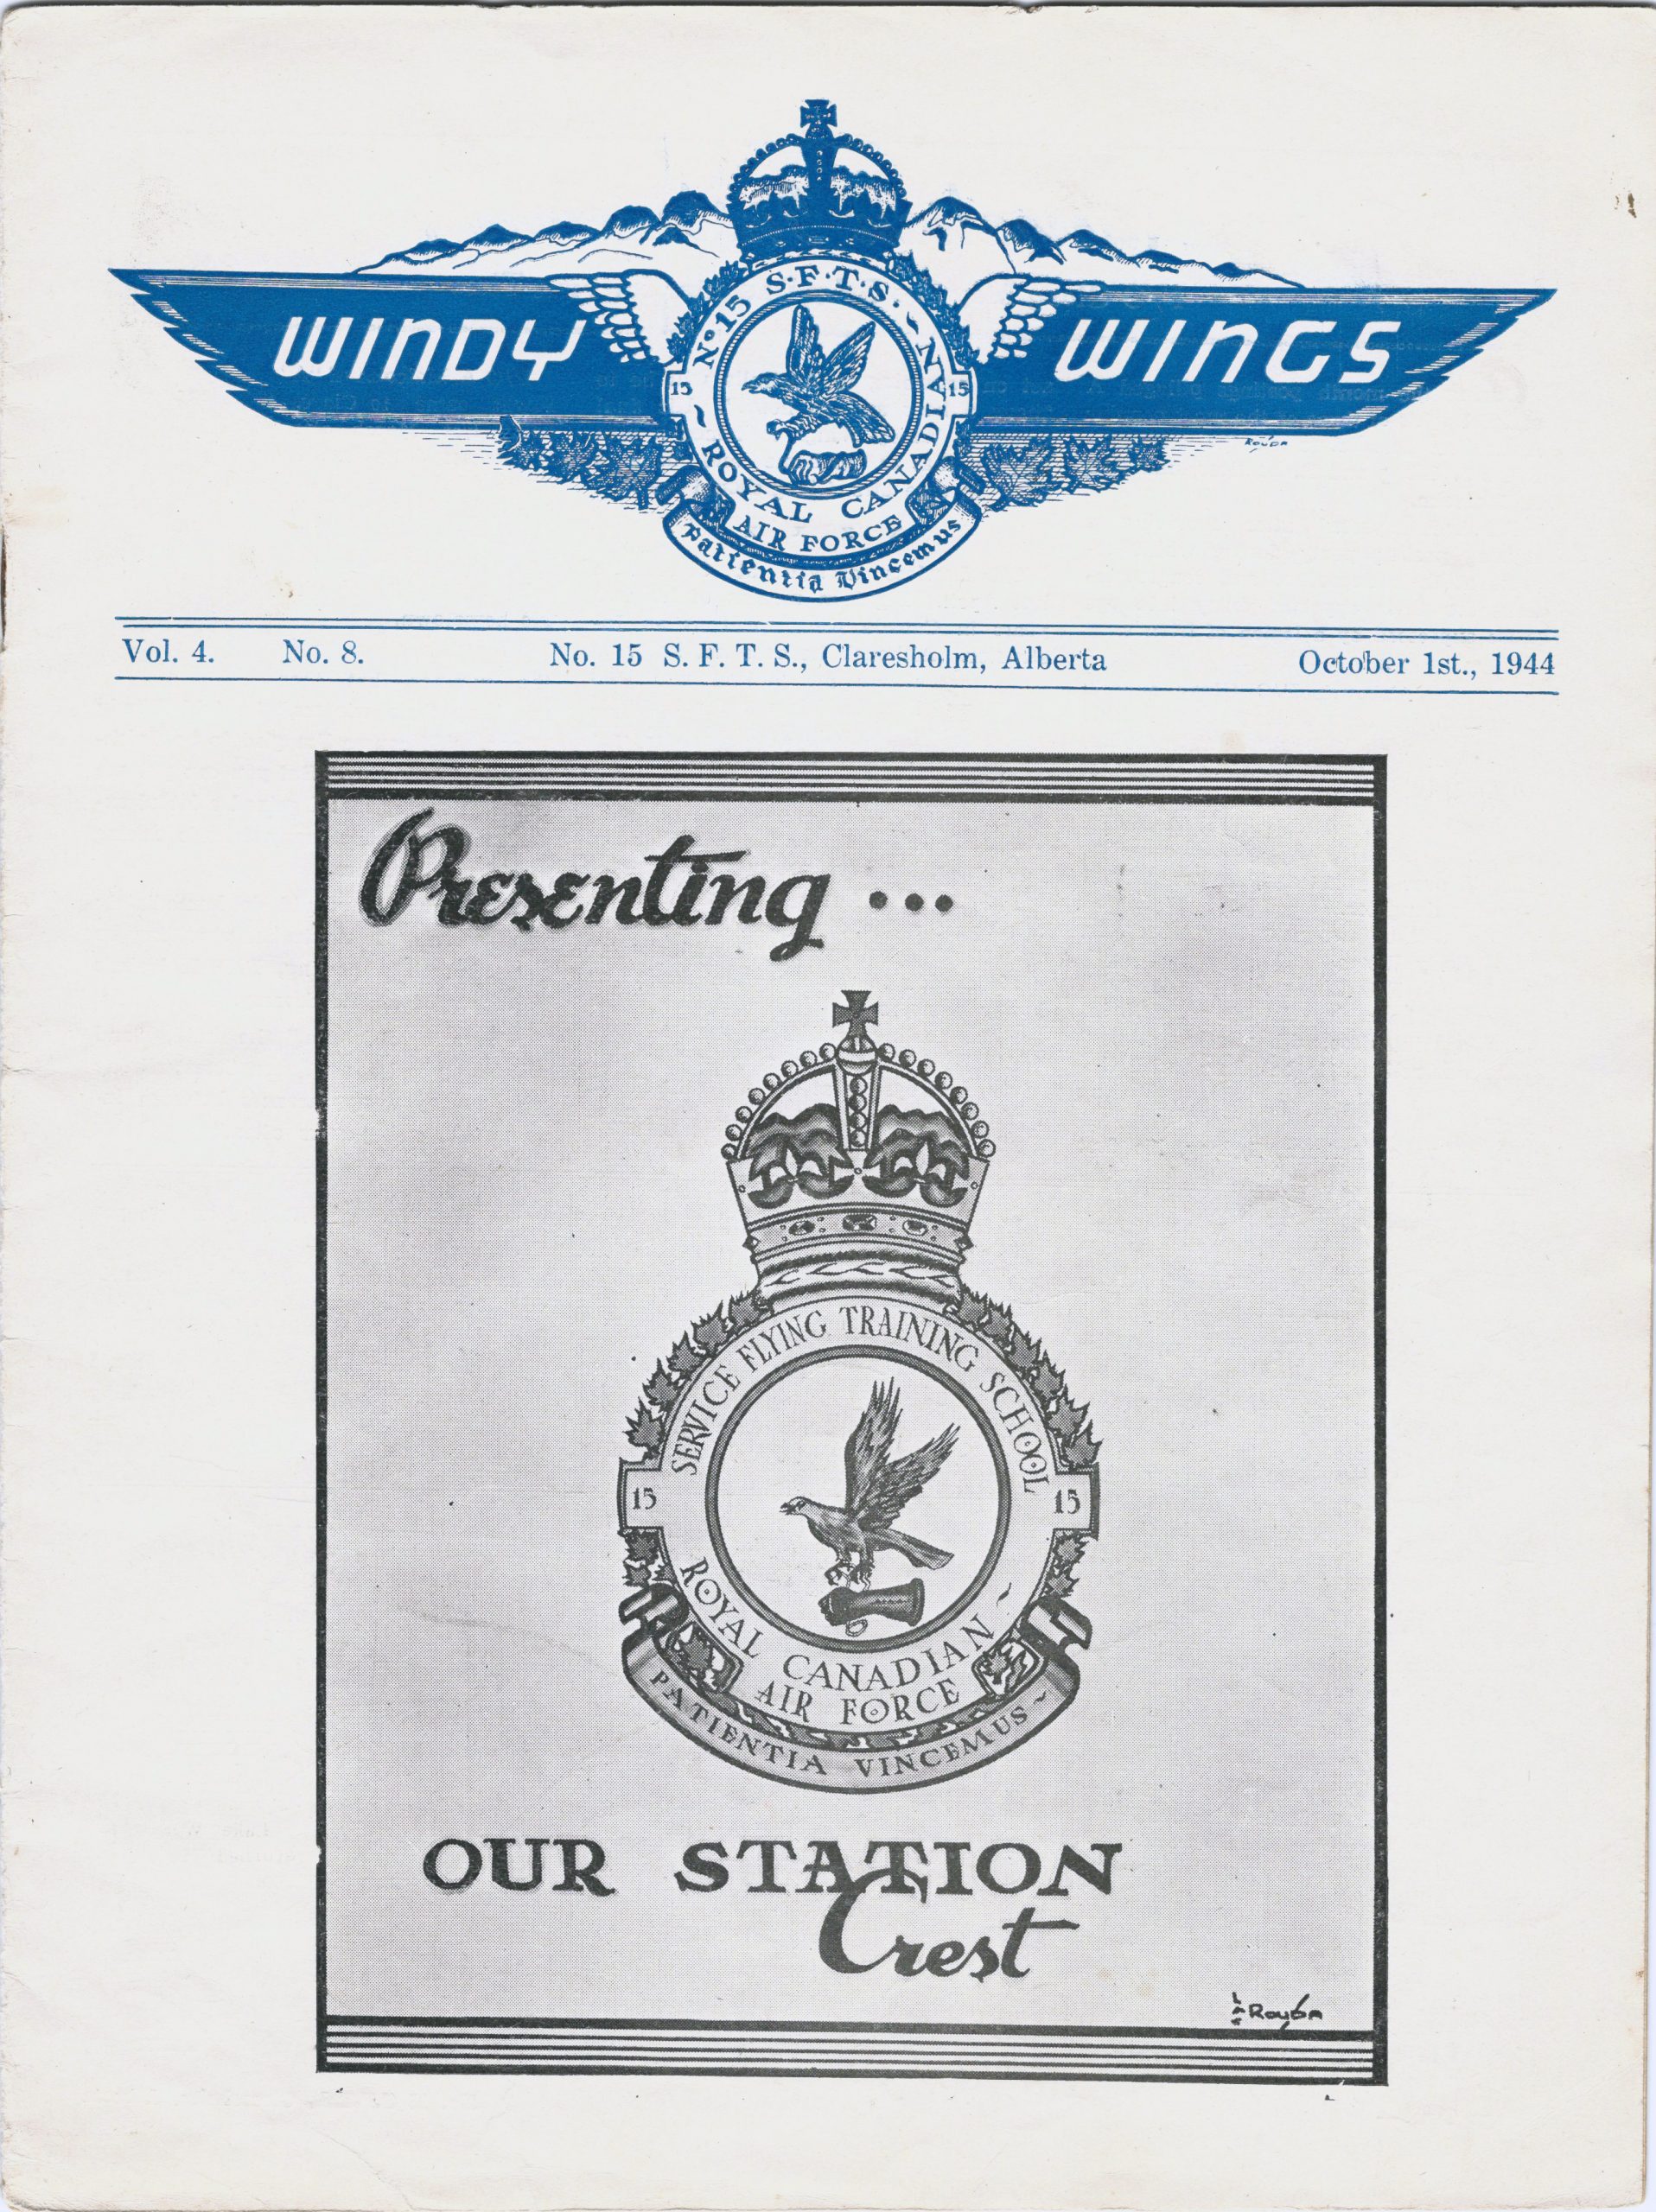 Couverture du magazine avec deux logos